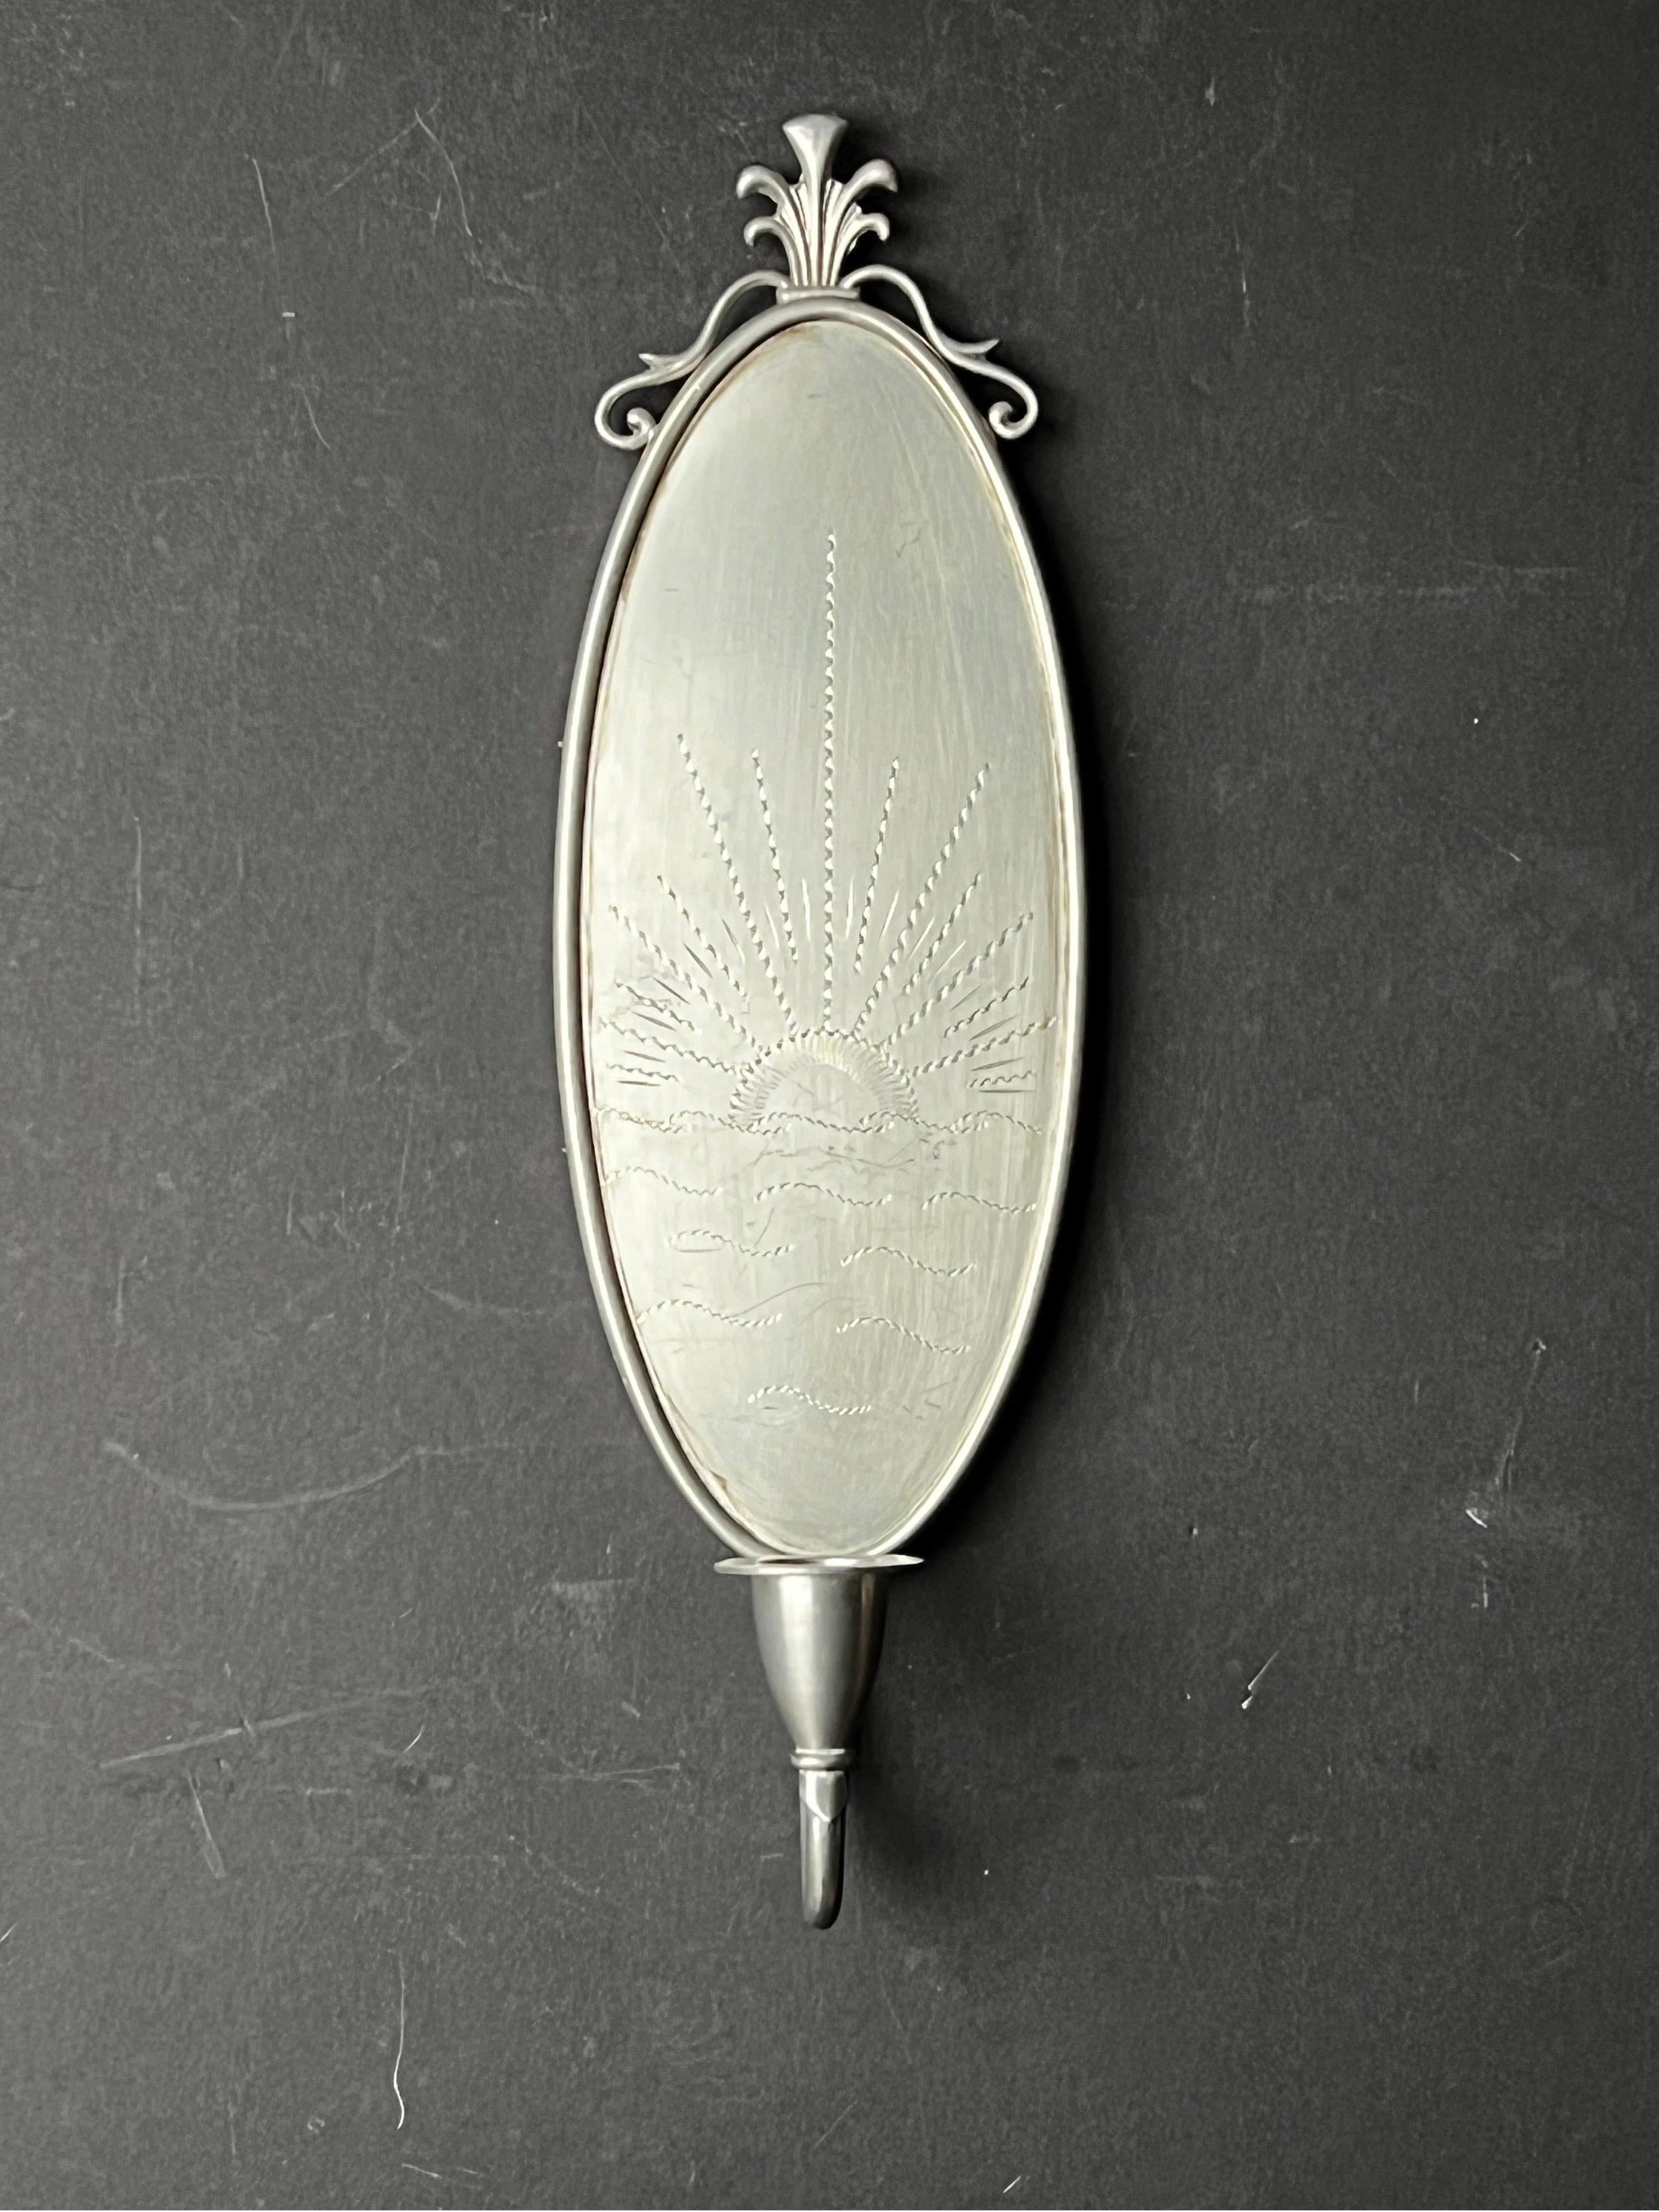 Une applique ovale en métal argenté - probablement de l'étain. Le panneau ovale est gravé d'un motif simple représentant un lever (ou un coucher) de soleil sur la mer. Le dos en bois a un seul point de suspension qui est estampillé 